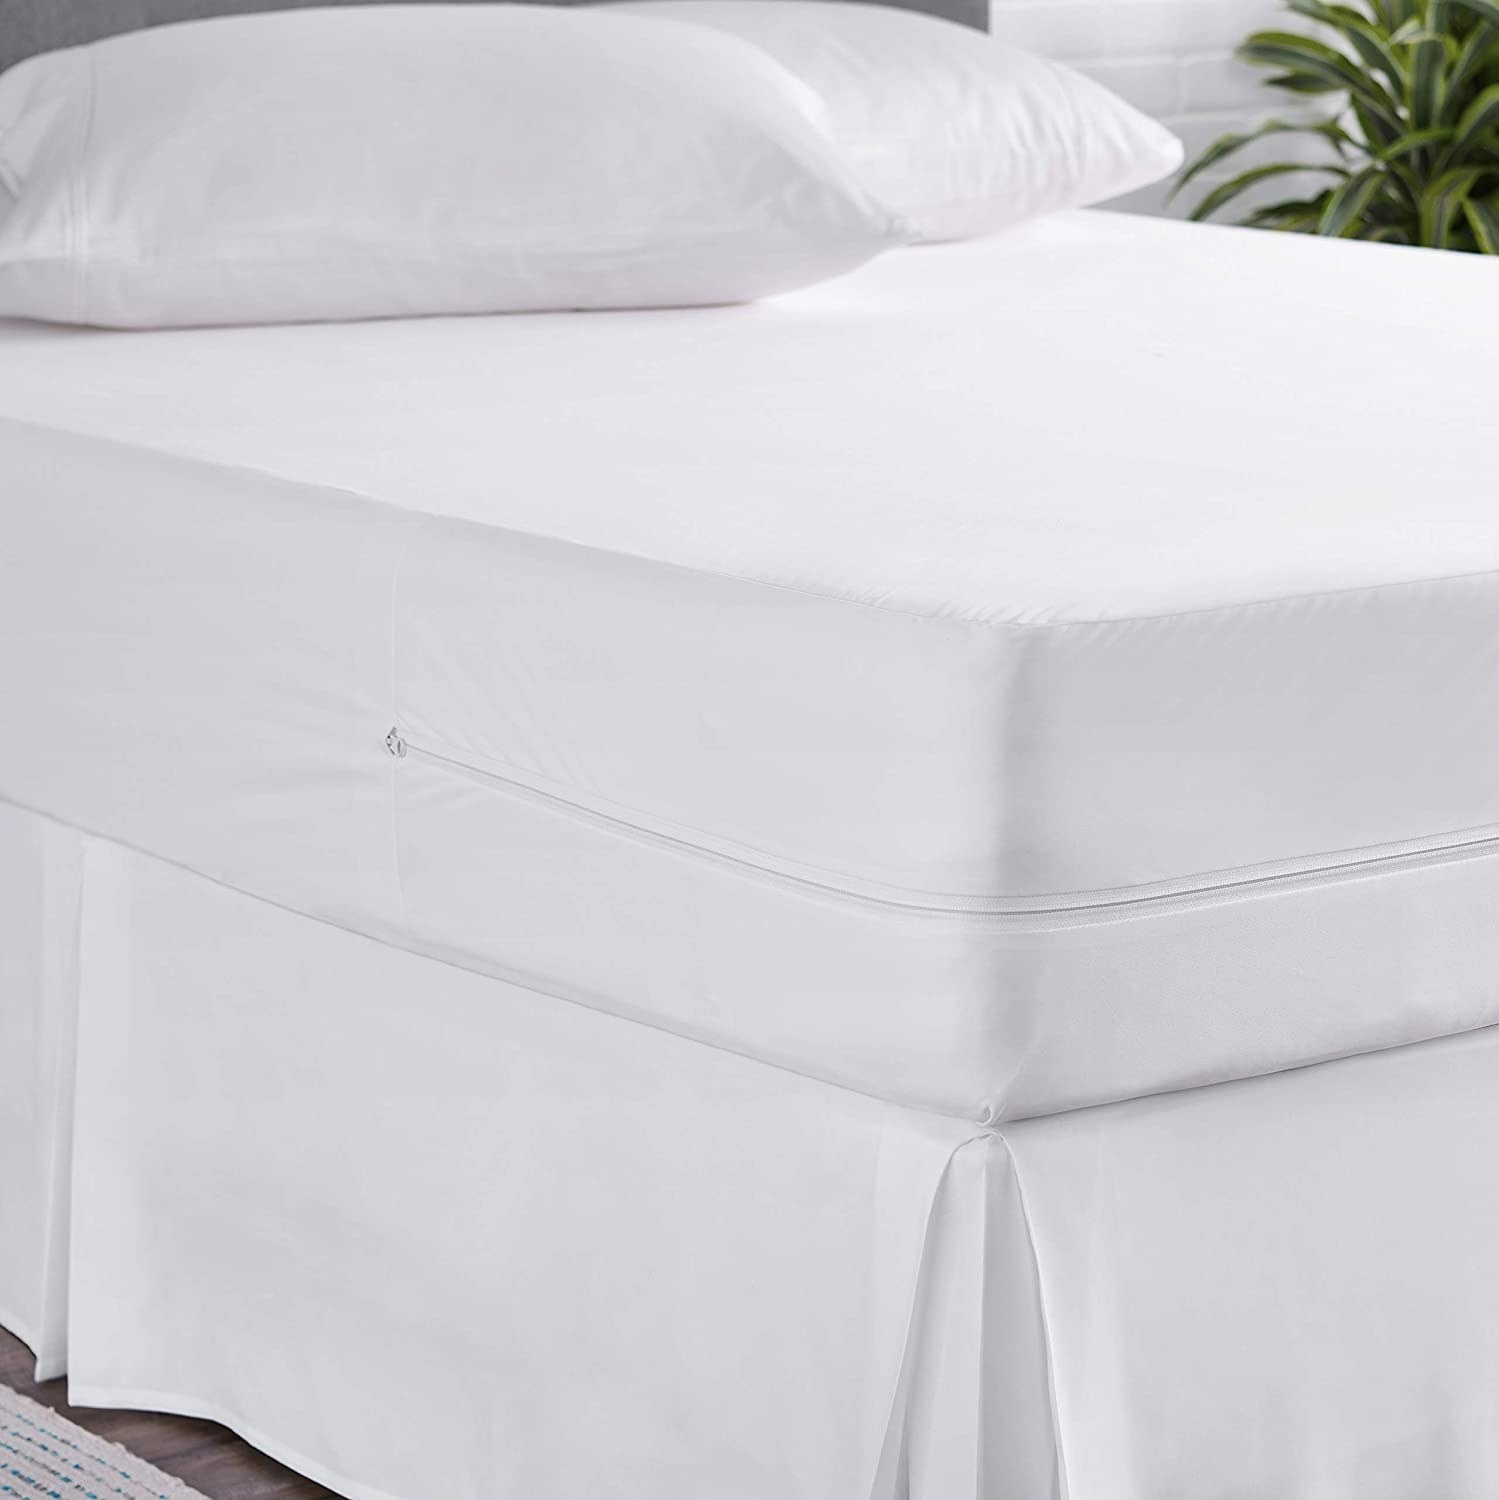 the white mattress encasement on a mattress